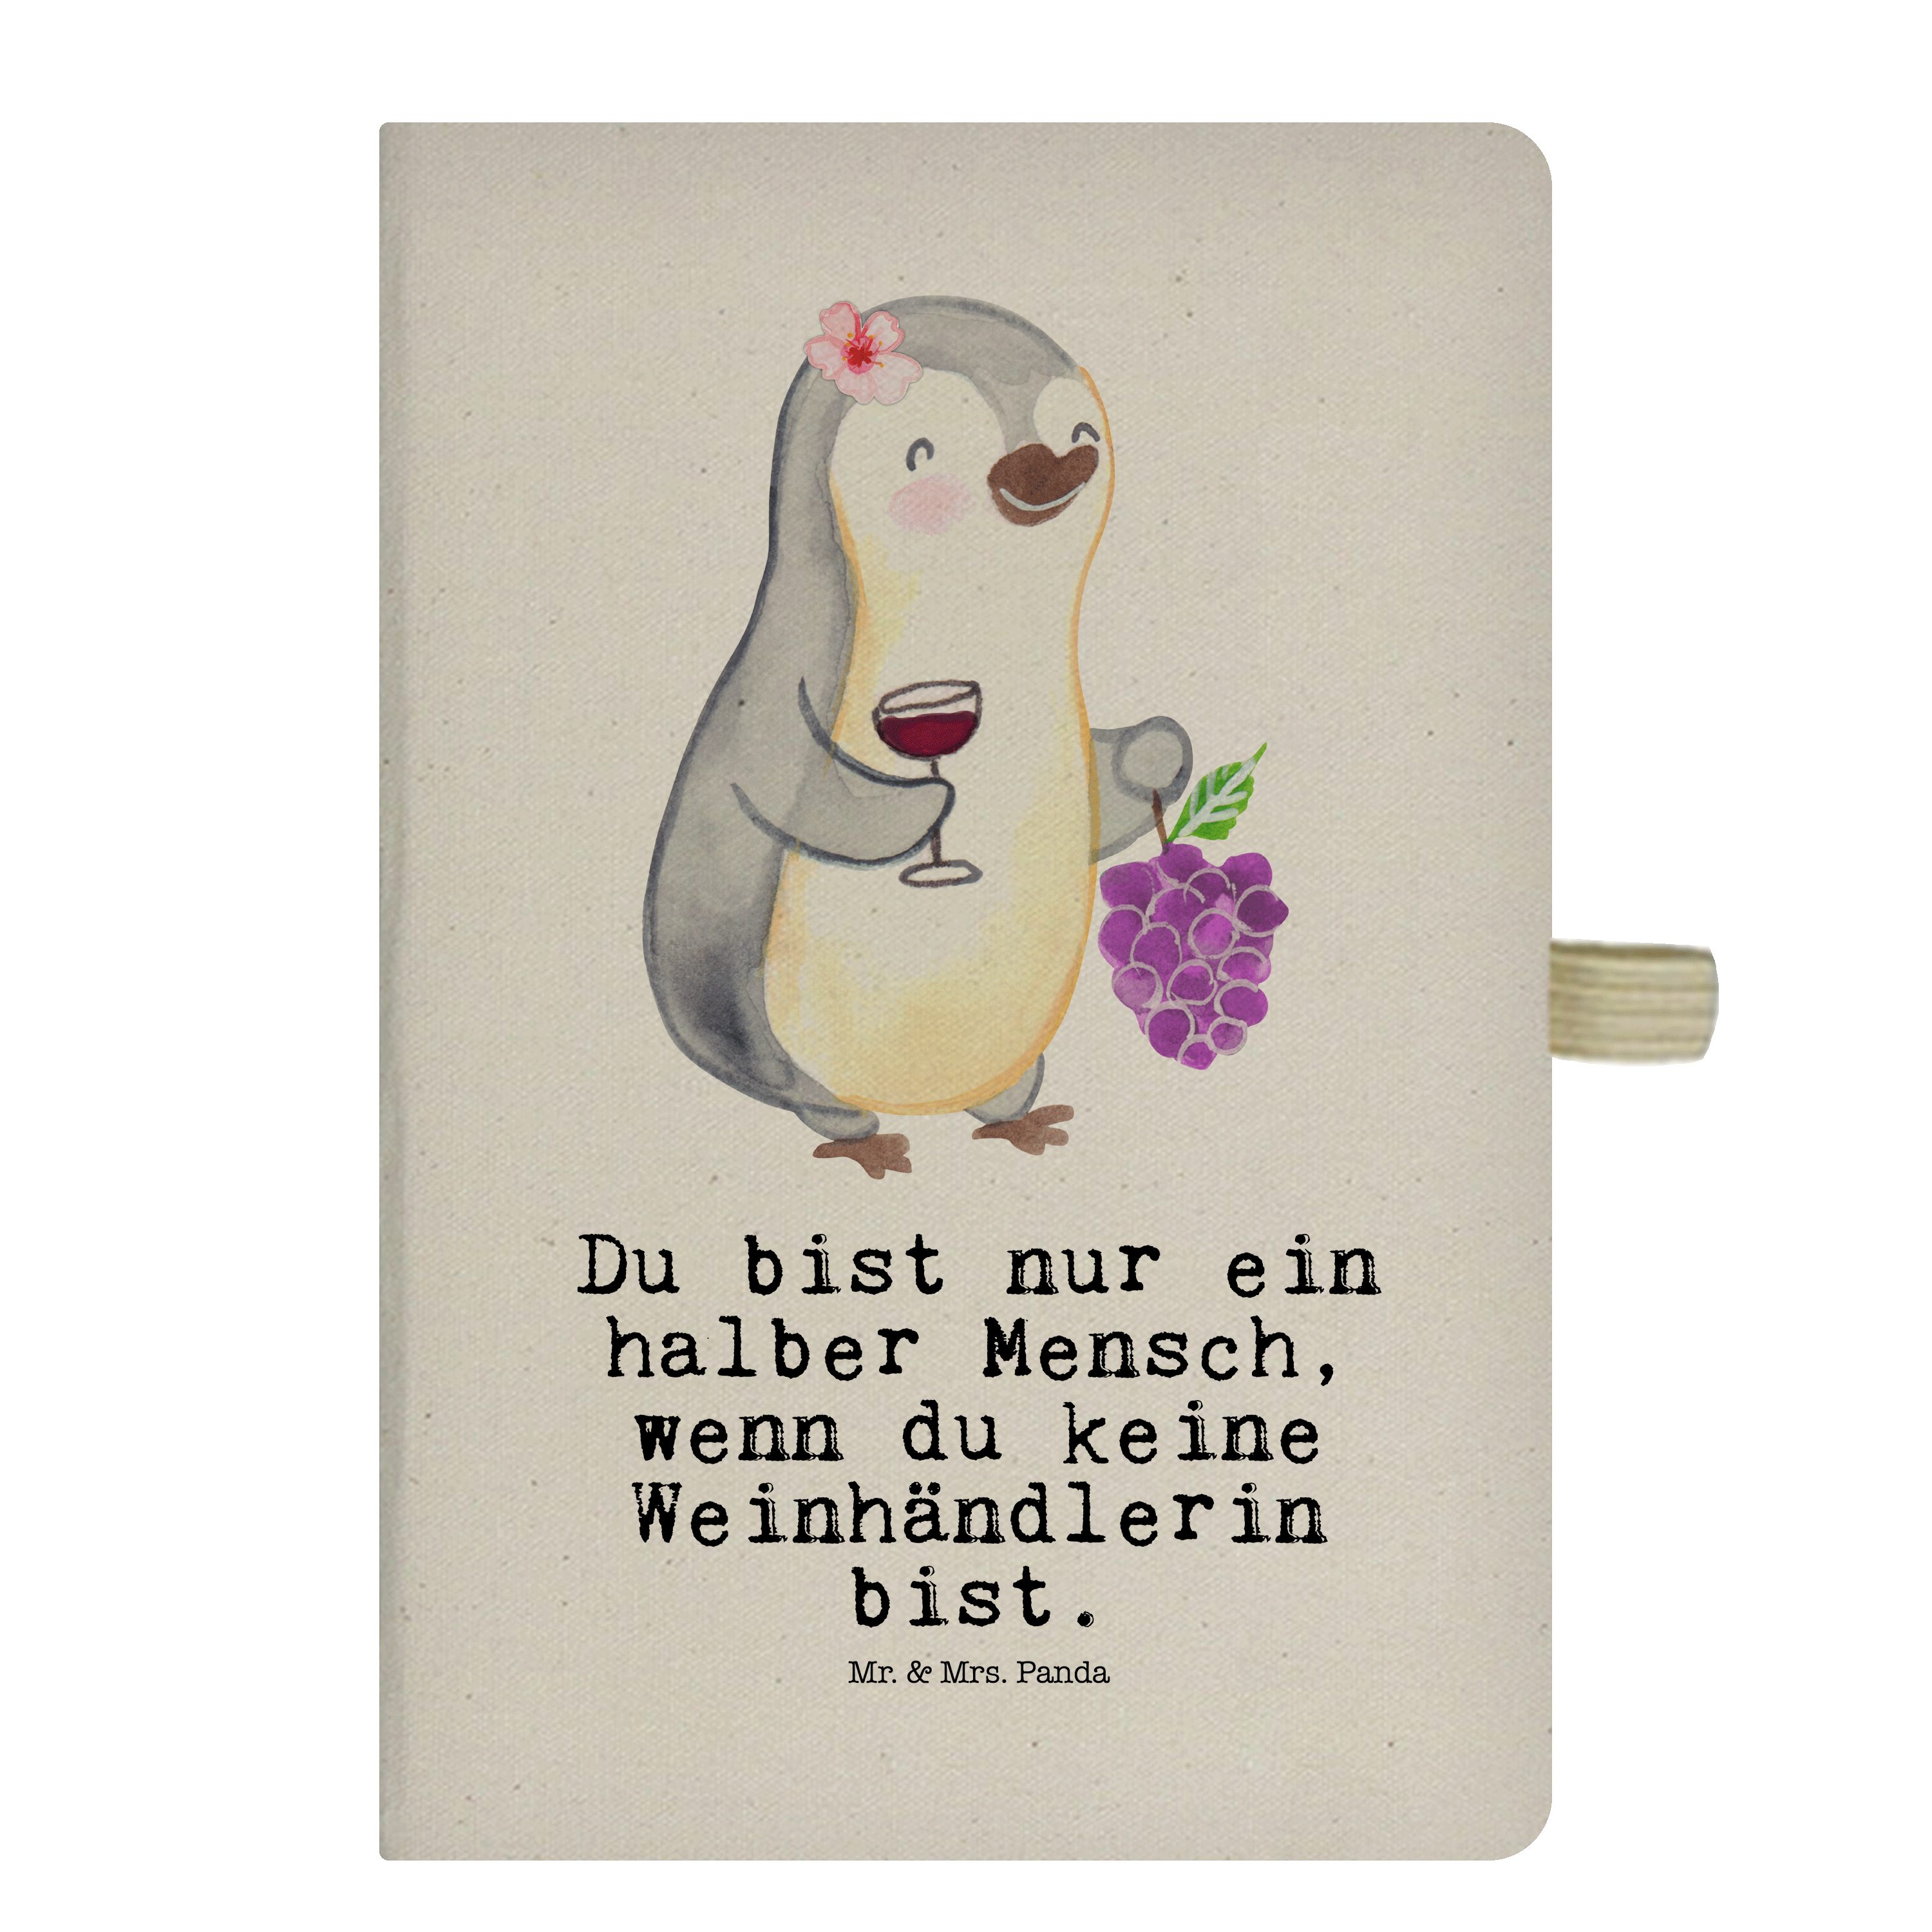 Mr. & Mrs. Panda Notizbuch Weinhändlerin mit Herz - Transparent - Geschenk, Kollege, Beruf, Noti Mr. & Mrs. Panda